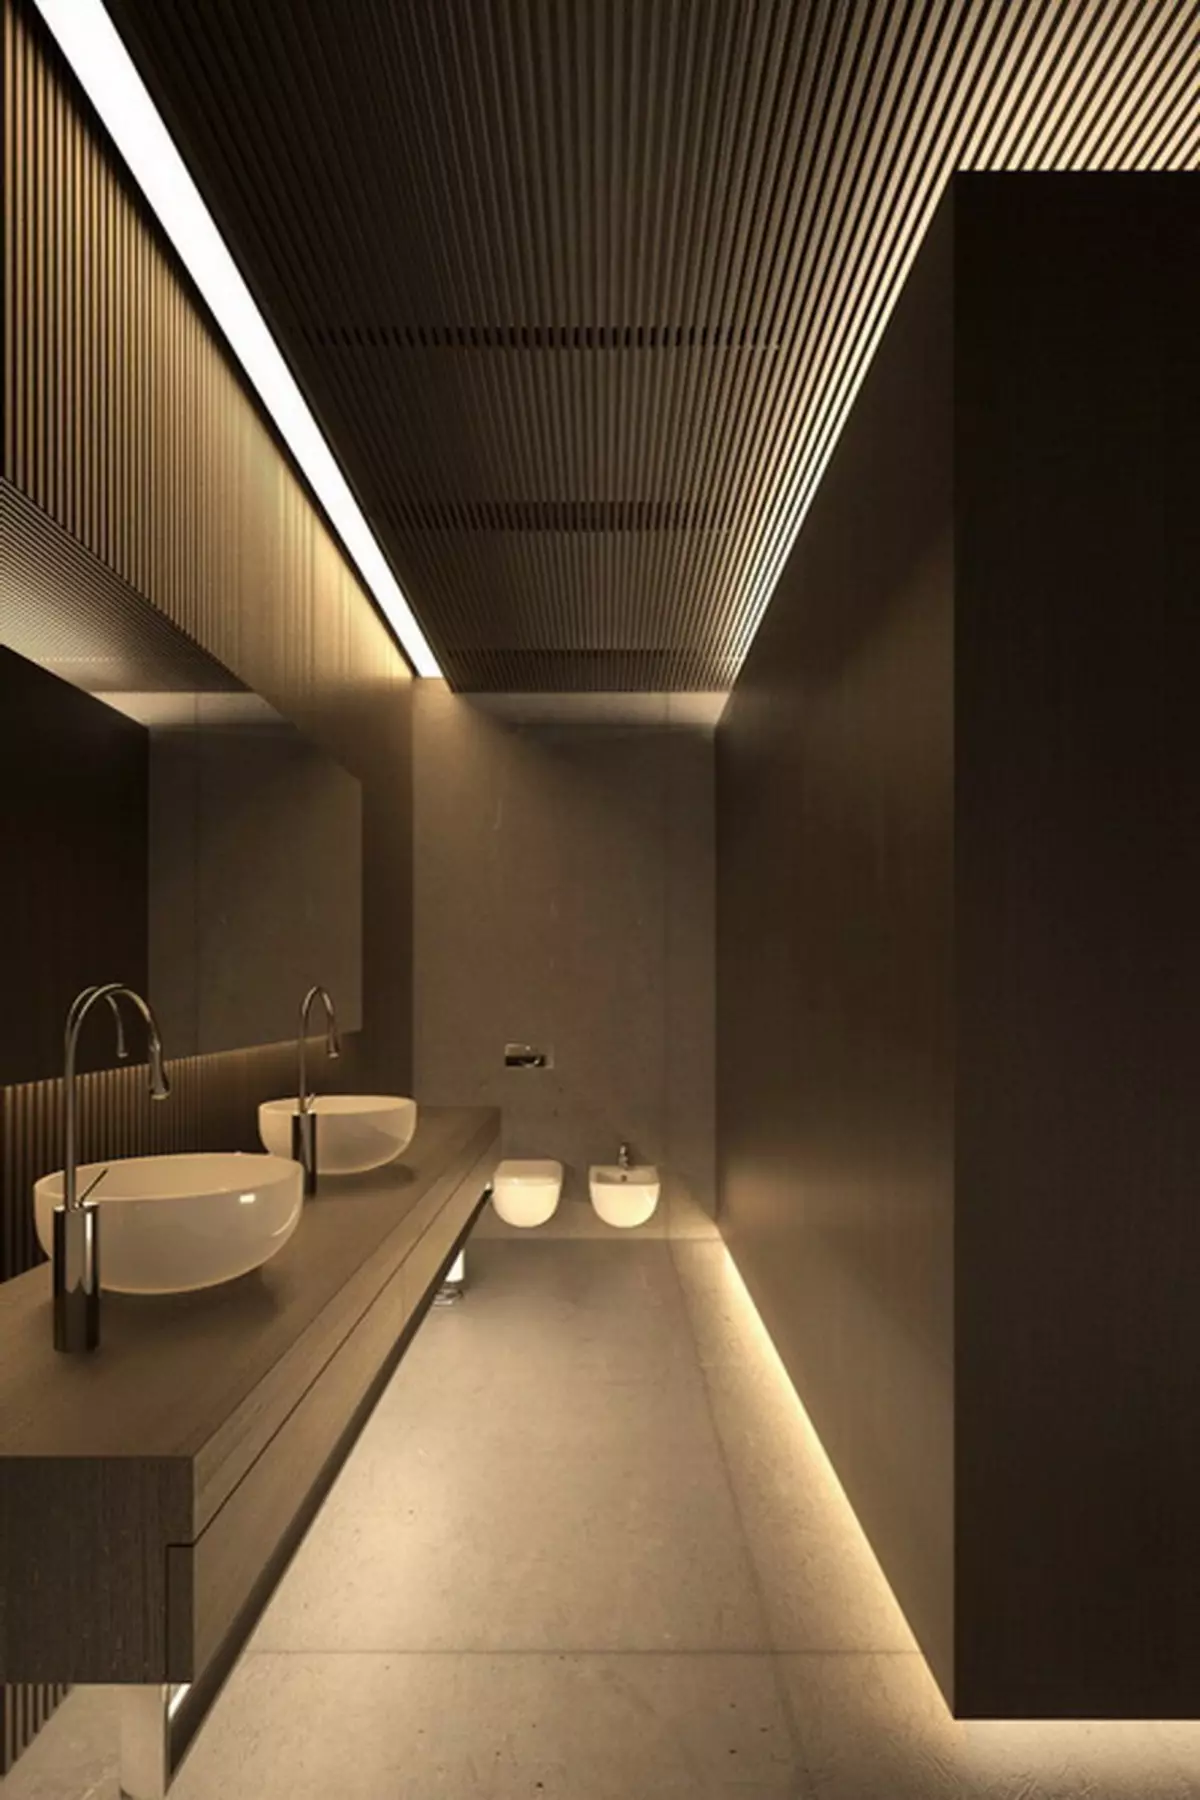 توالت سیاه (67 عکس): طراحی توالت در رنگ های سیاه و سفید، انتخاب یک توالت رنگ تیره در یک آپارتمان، به پایان رساندن با کاشی های سیاه و قرمز 10501_42